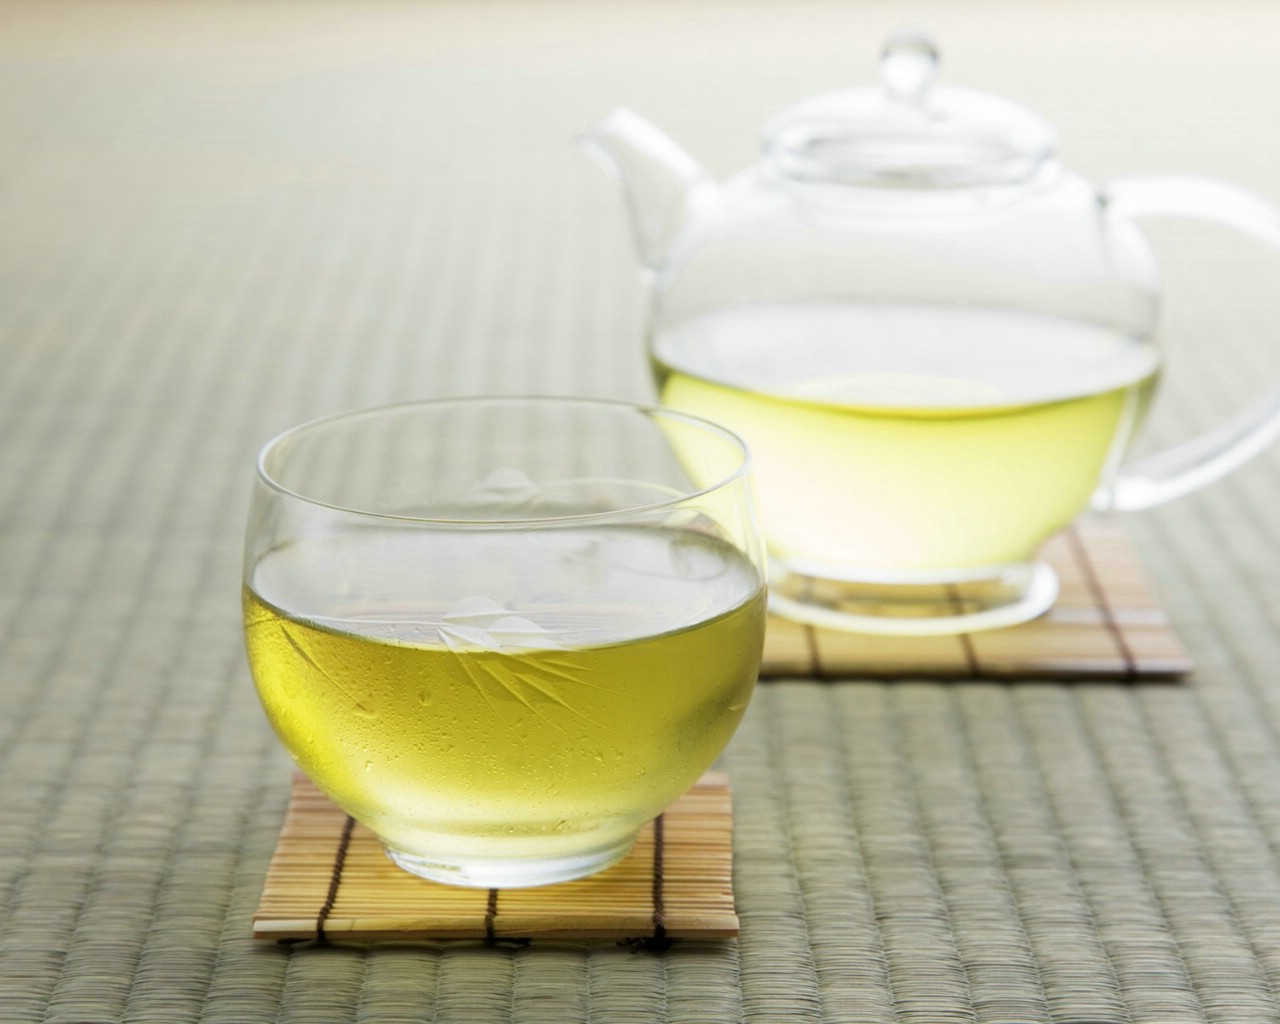 壁纸1280x1024 新茶绿茶图片 日本茶道摄影壁纸 日本茶道文化与健康饮品壁纸 日本茶道文化与健康饮品图片 日本茶道文化与健康饮品素材 摄影壁纸 摄影图库 摄影图片素材桌面壁纸